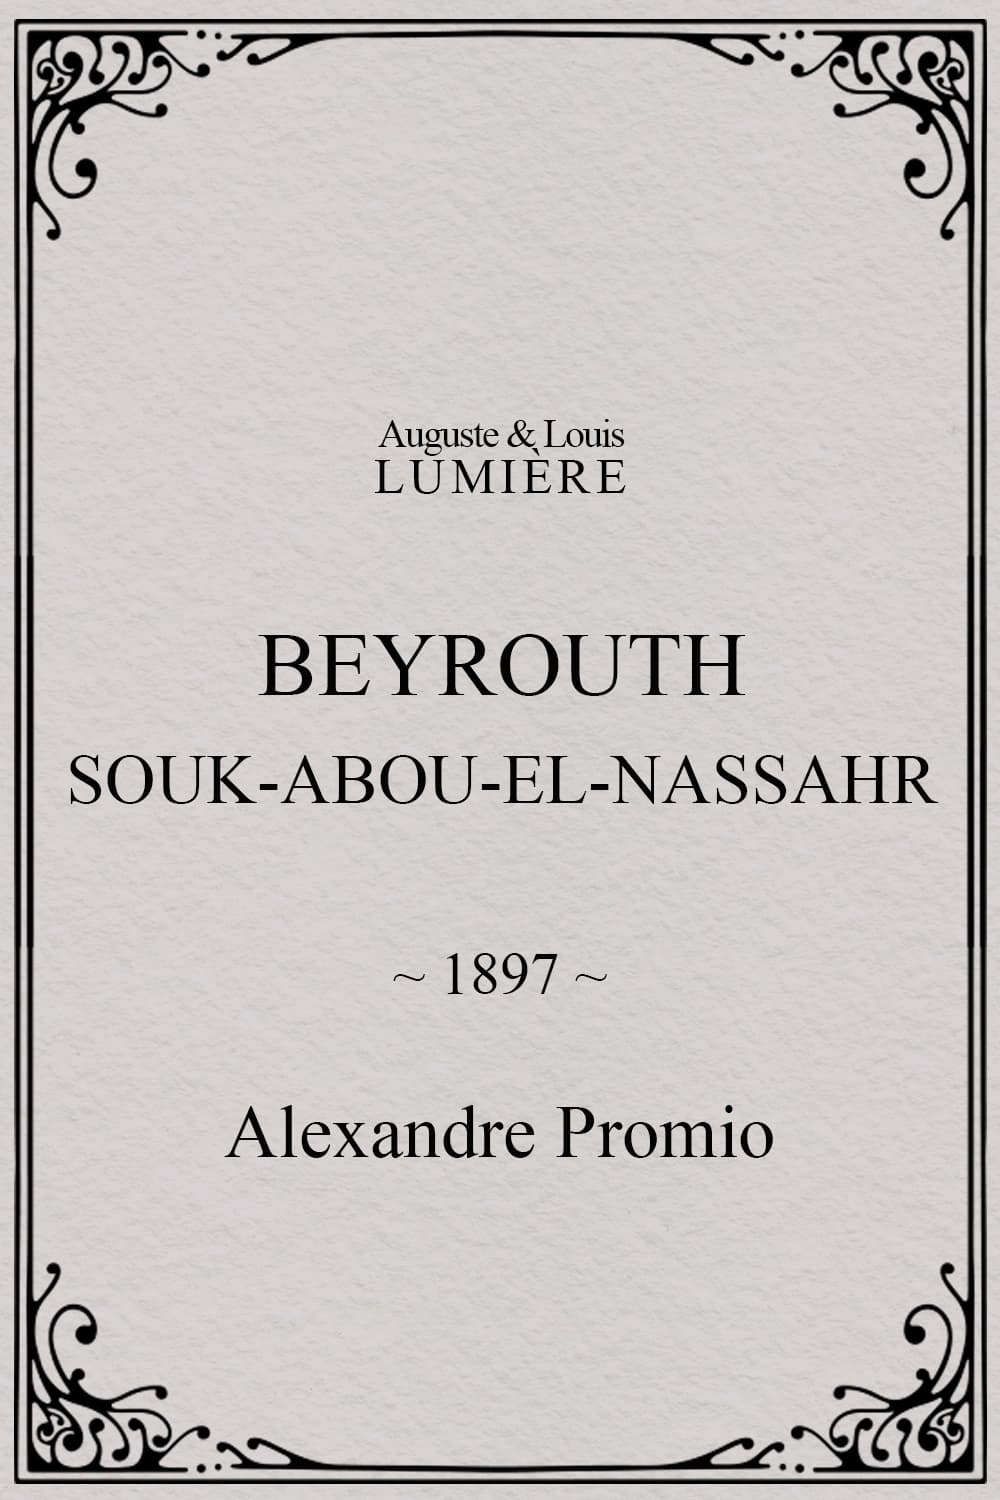 Beyrouth, Souk-Abou-el-Nassahr (1897)